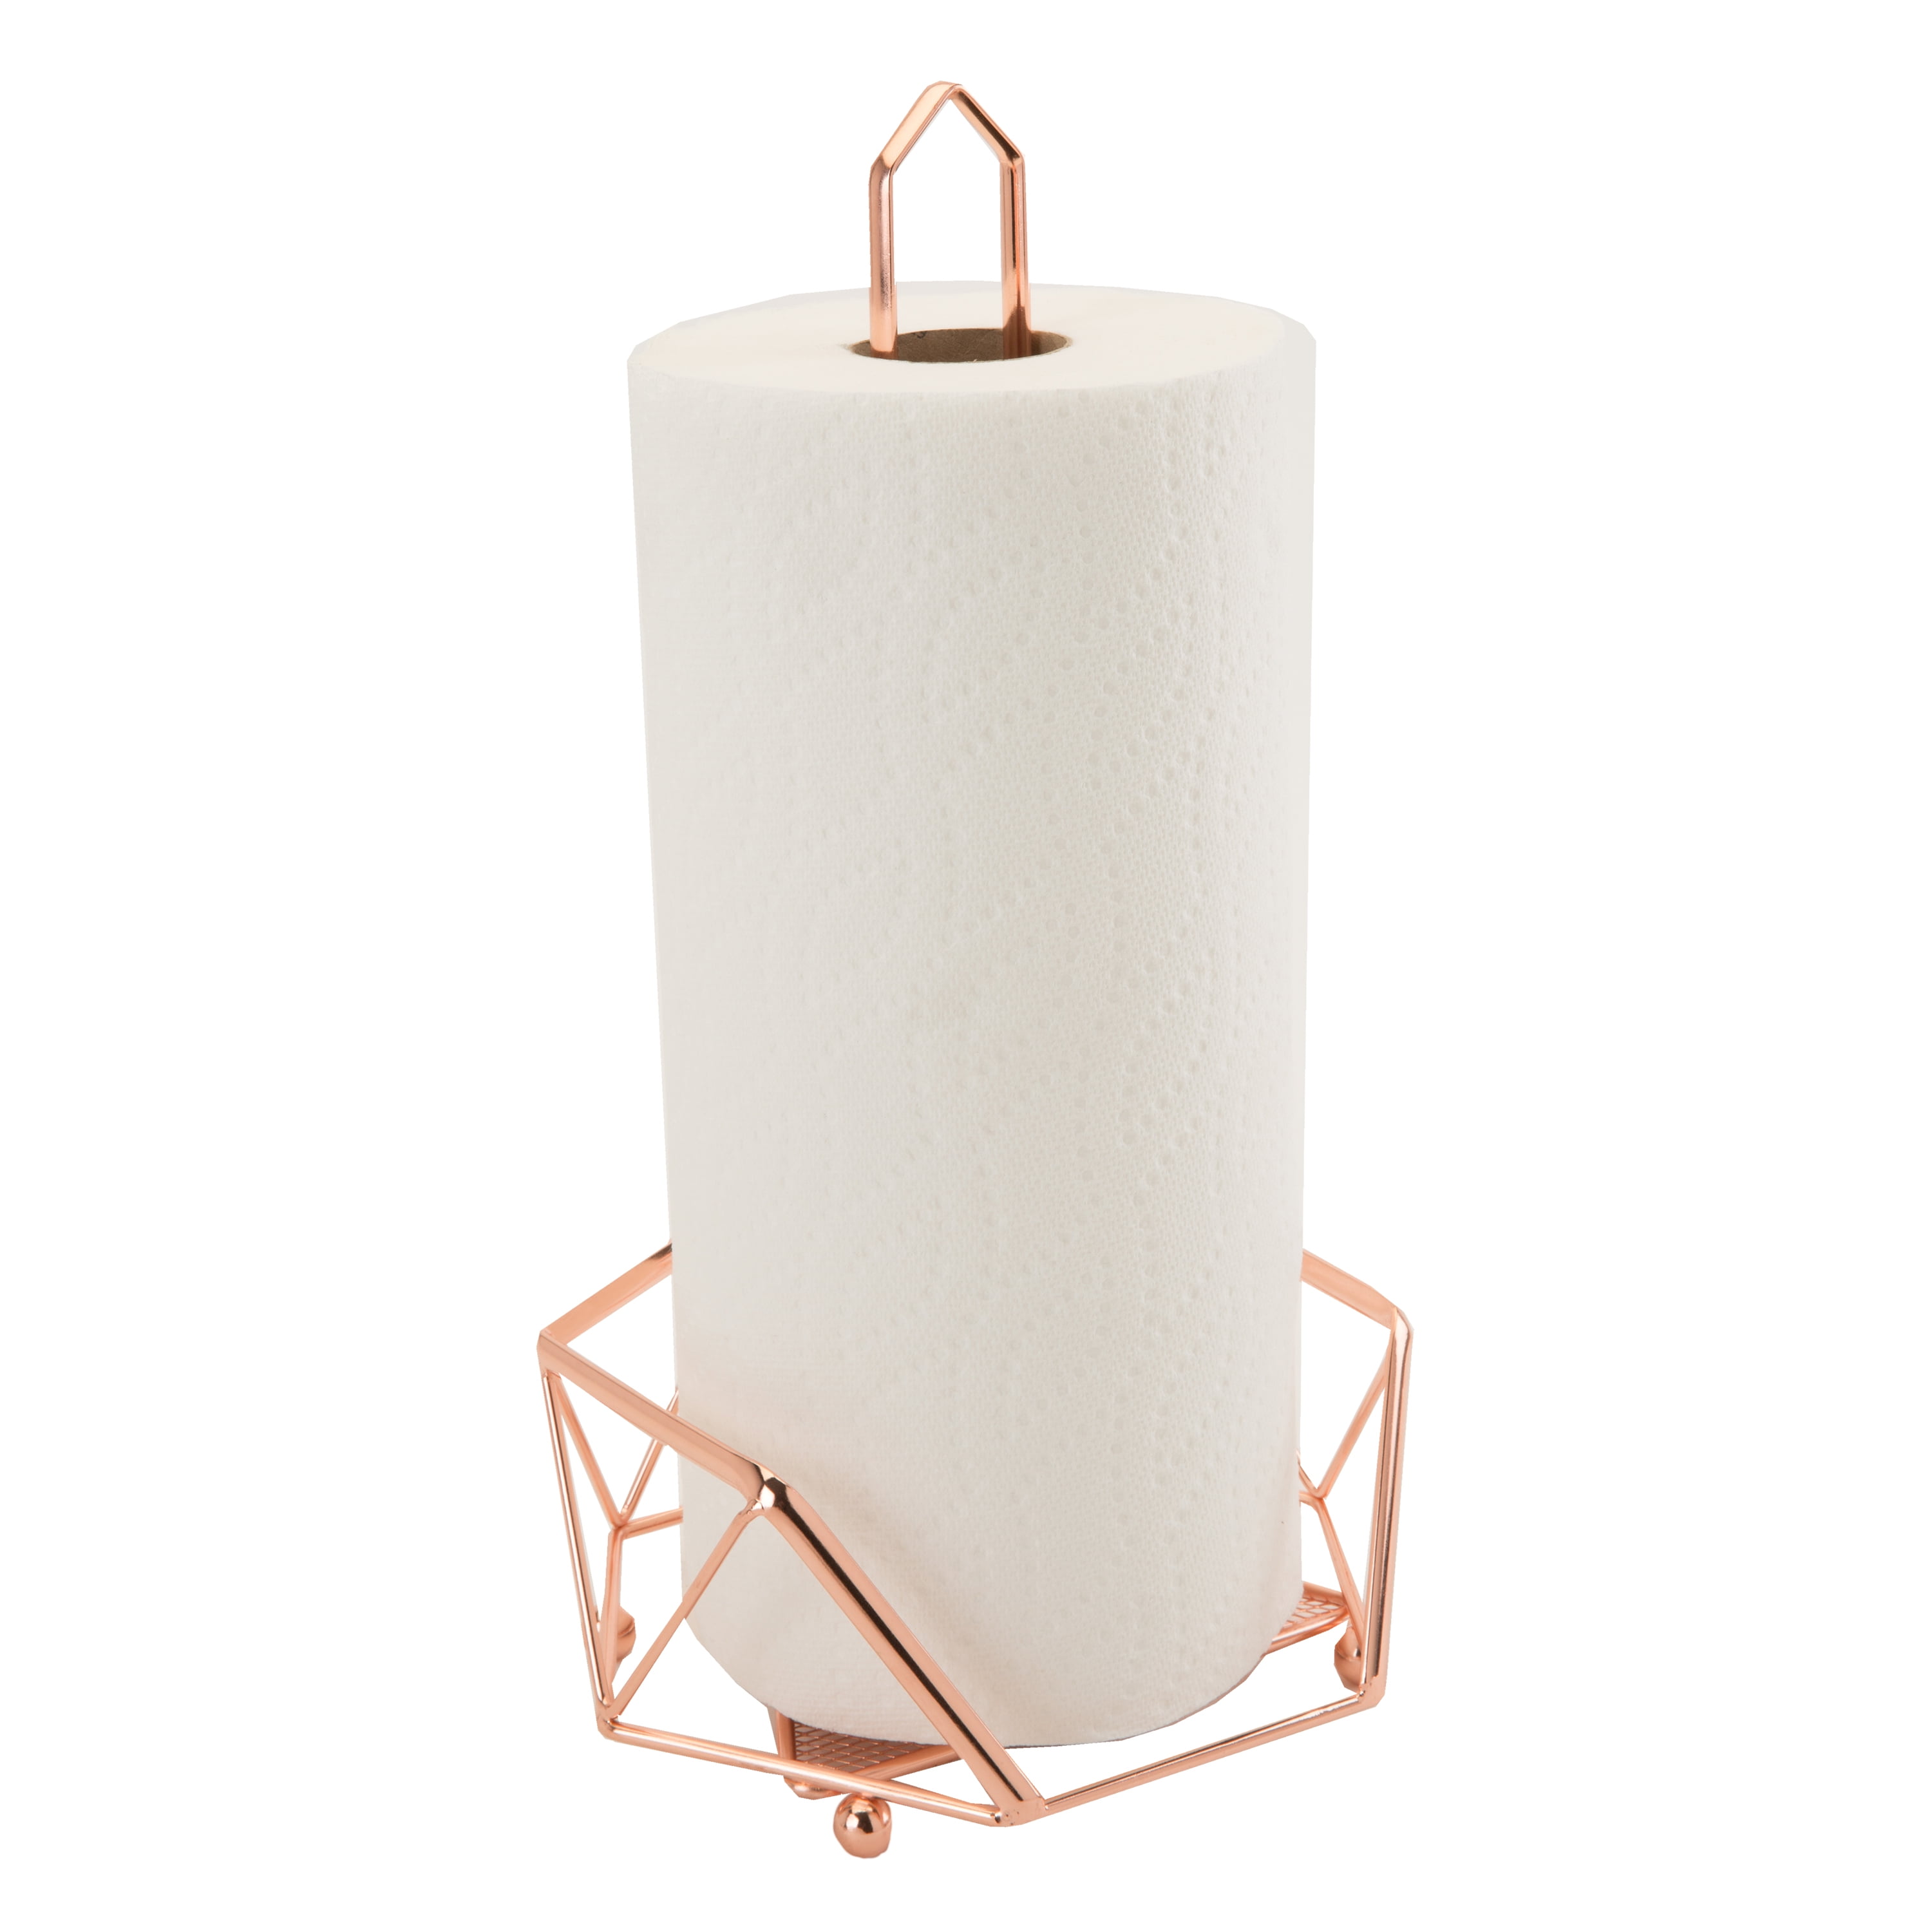 Copper & Wood Paper Towel Holder 